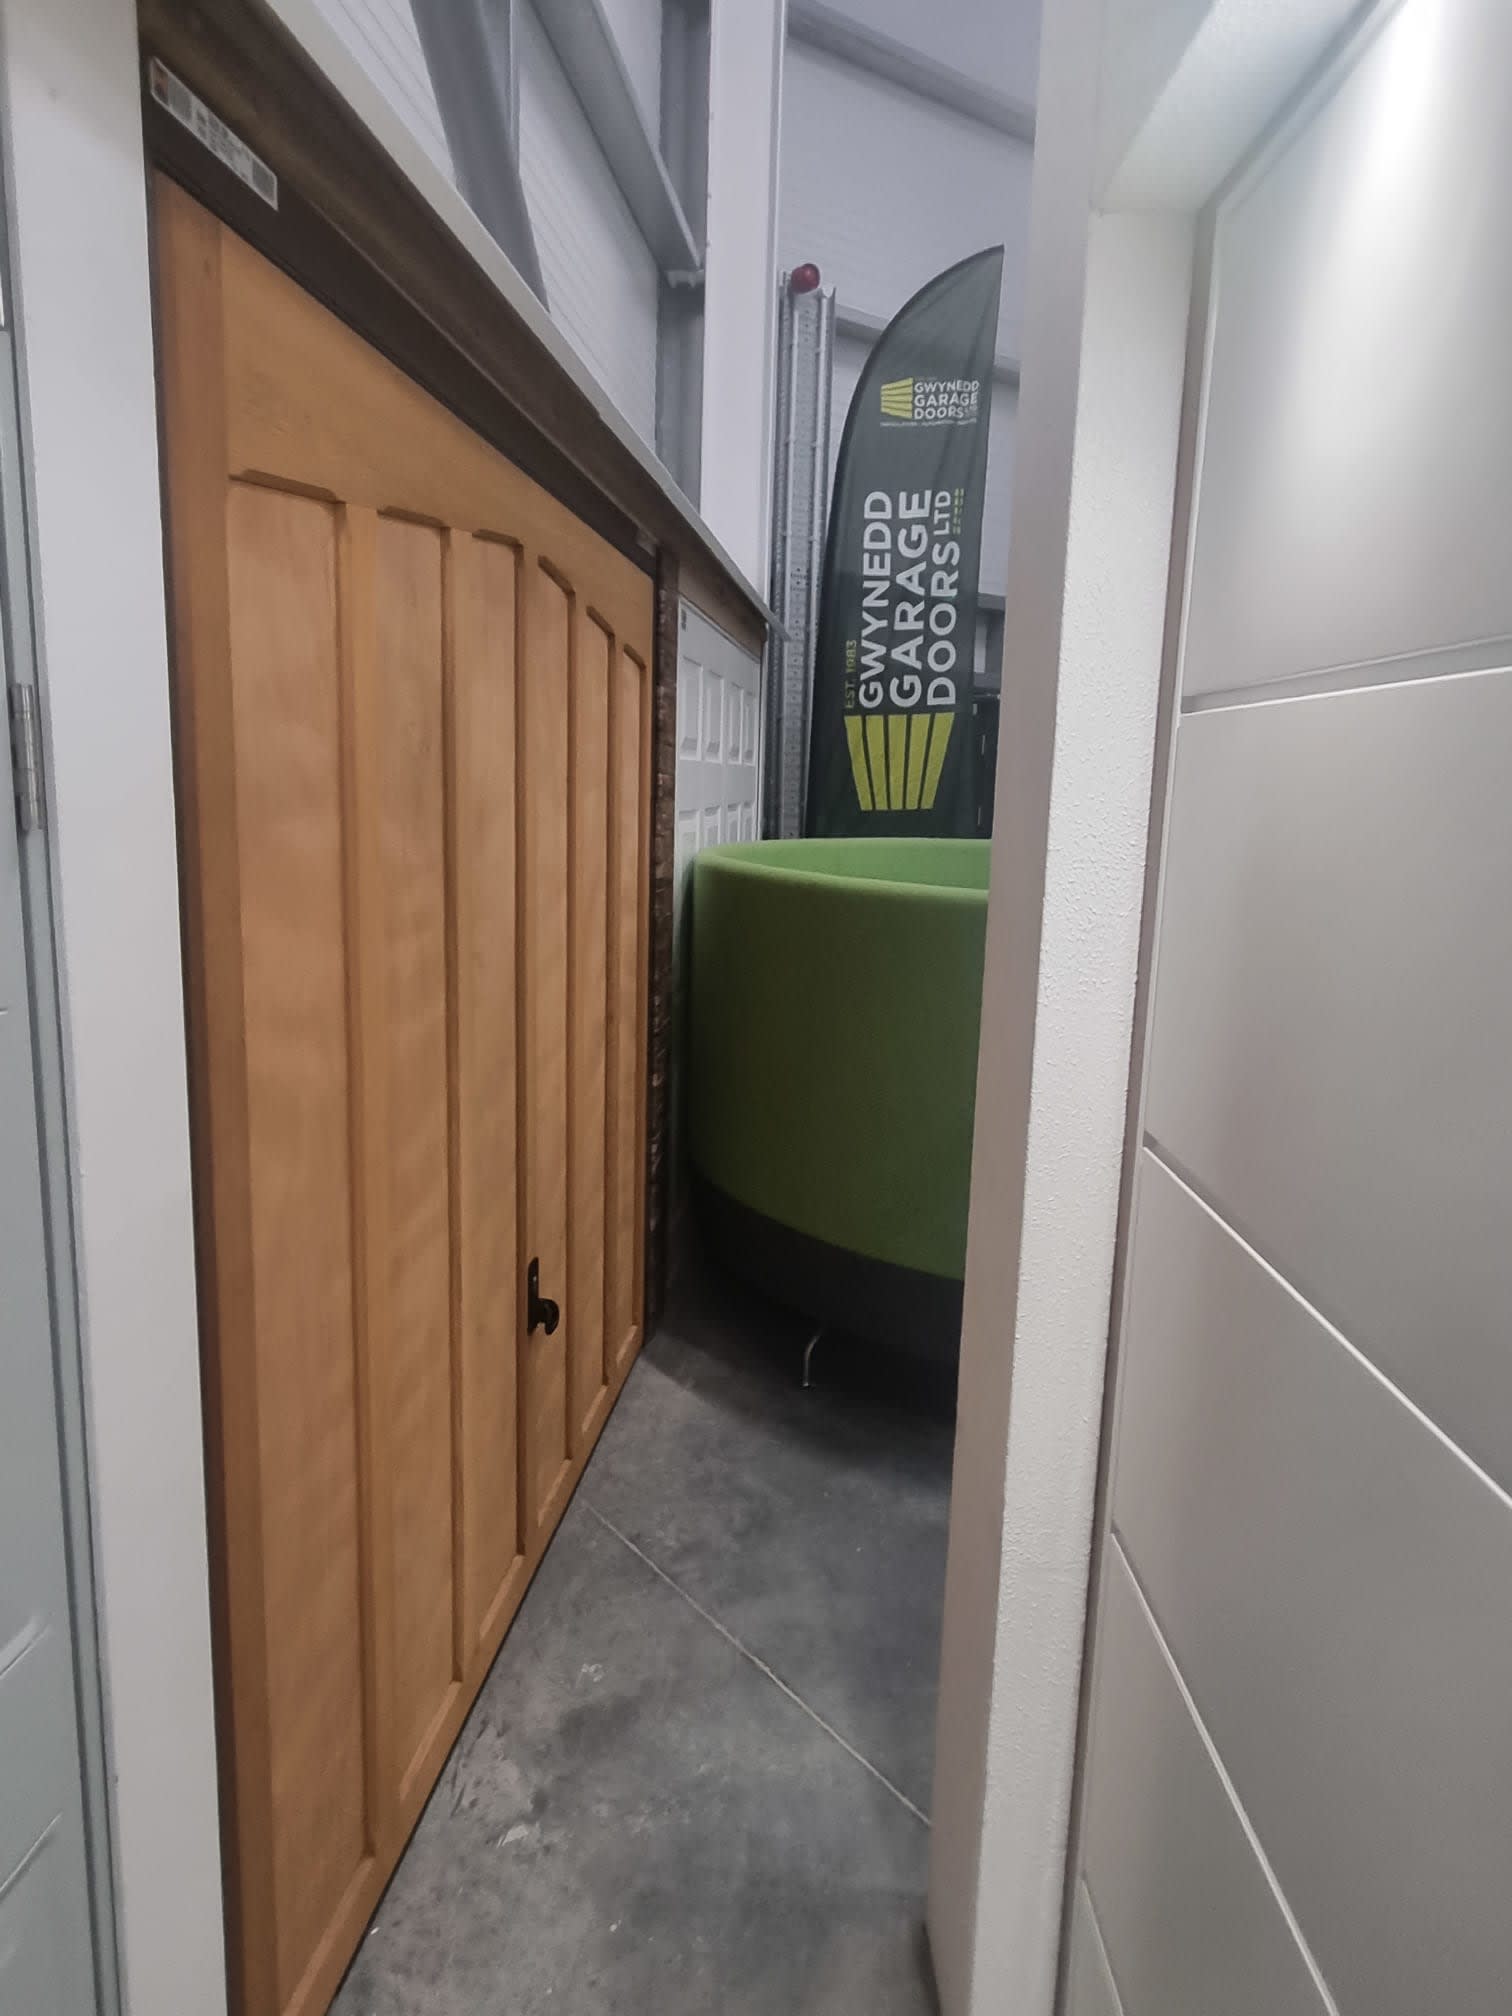 Images Gwynedd Garage Doors